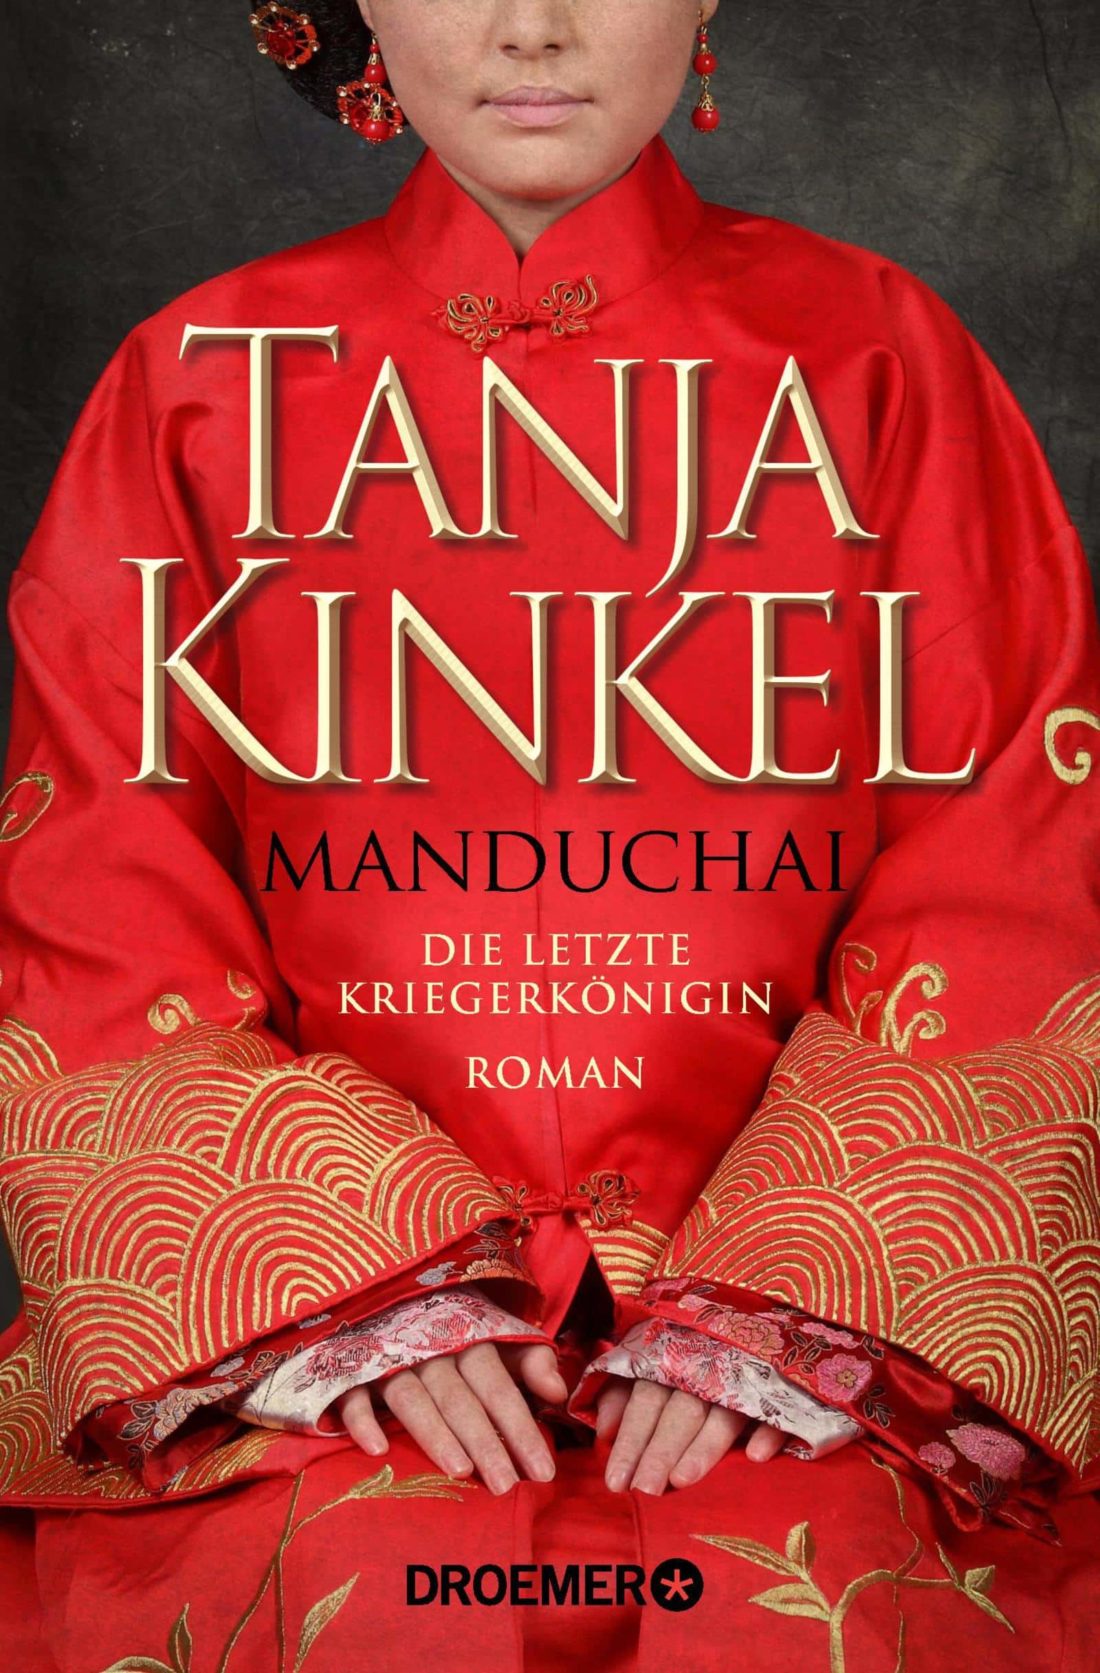 LITL019 [Podcast] Rezension: Manduchai Die letzte Kriegerkönigin – Tanja Kinkel